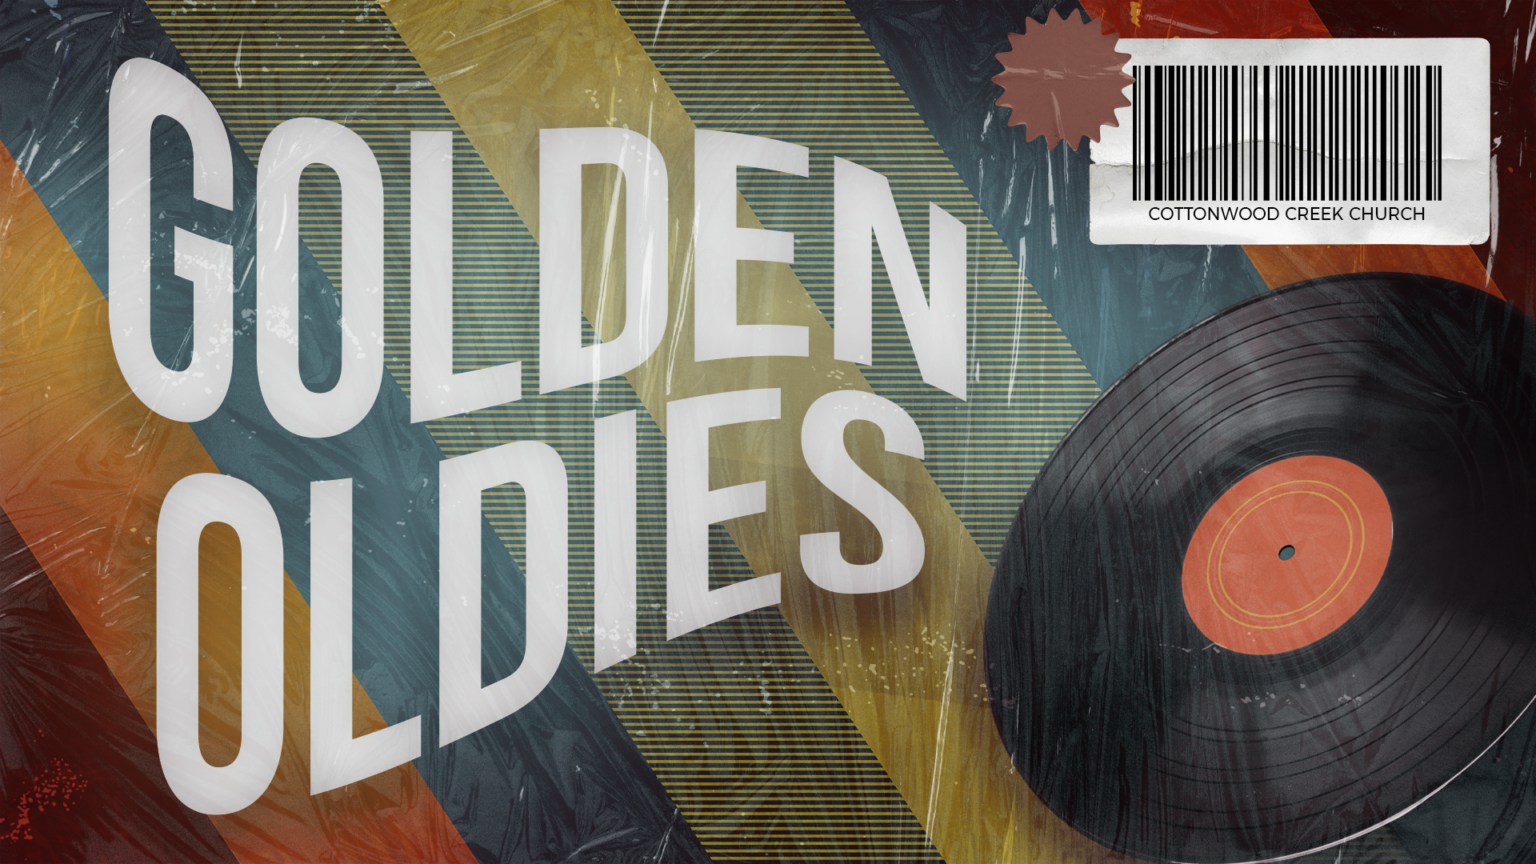 Golden Oldies Series Slide